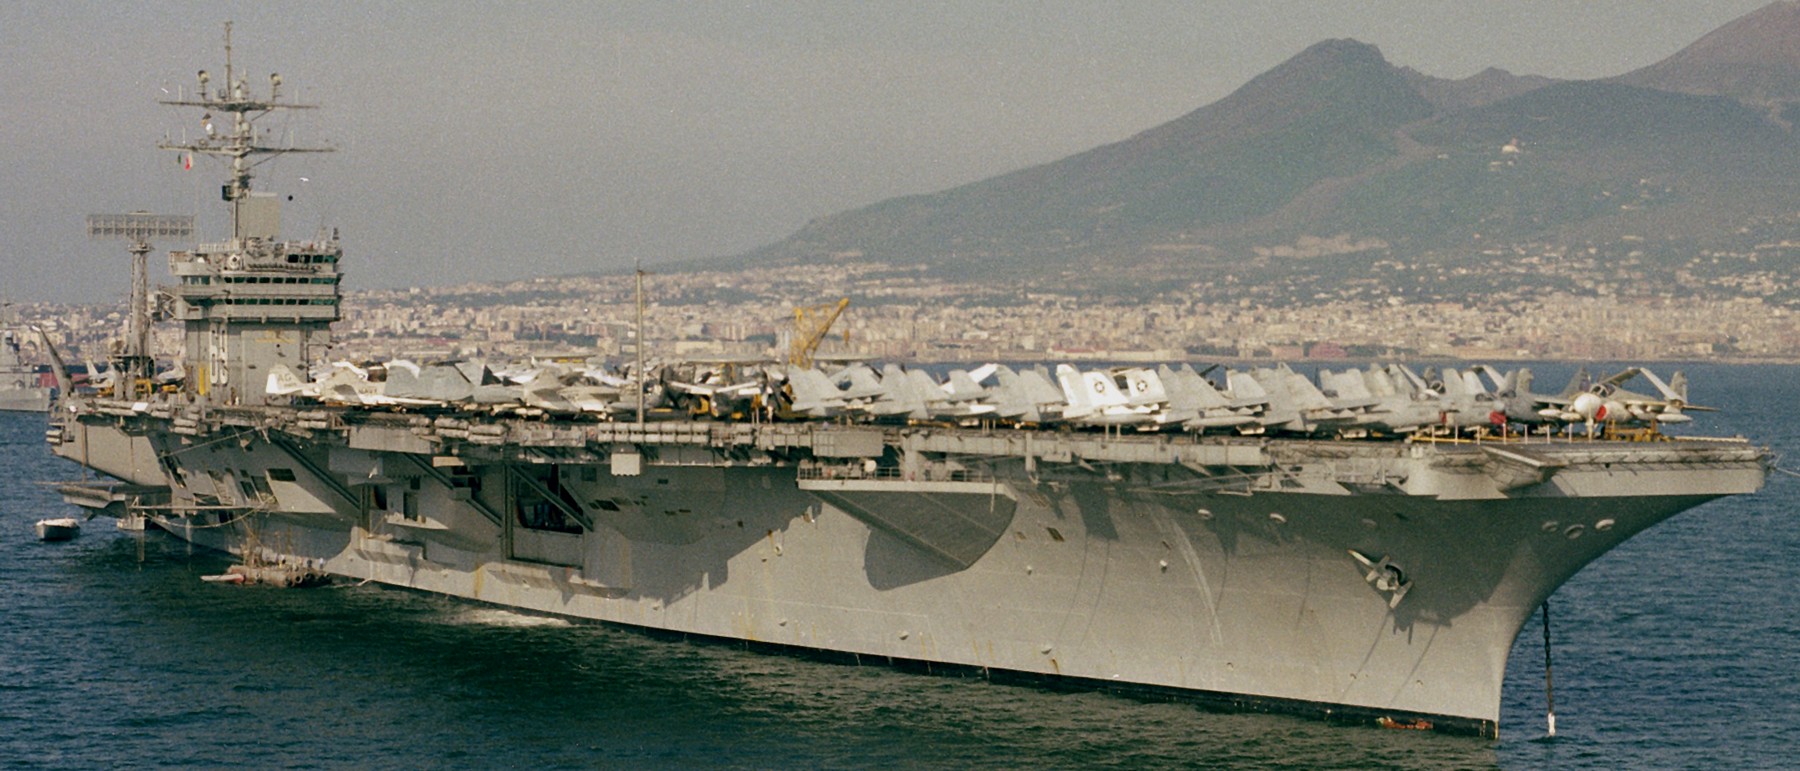 cvn-69 uss dwight d. eisenhower aircraft carrier air wing cvw-7 us navy 279